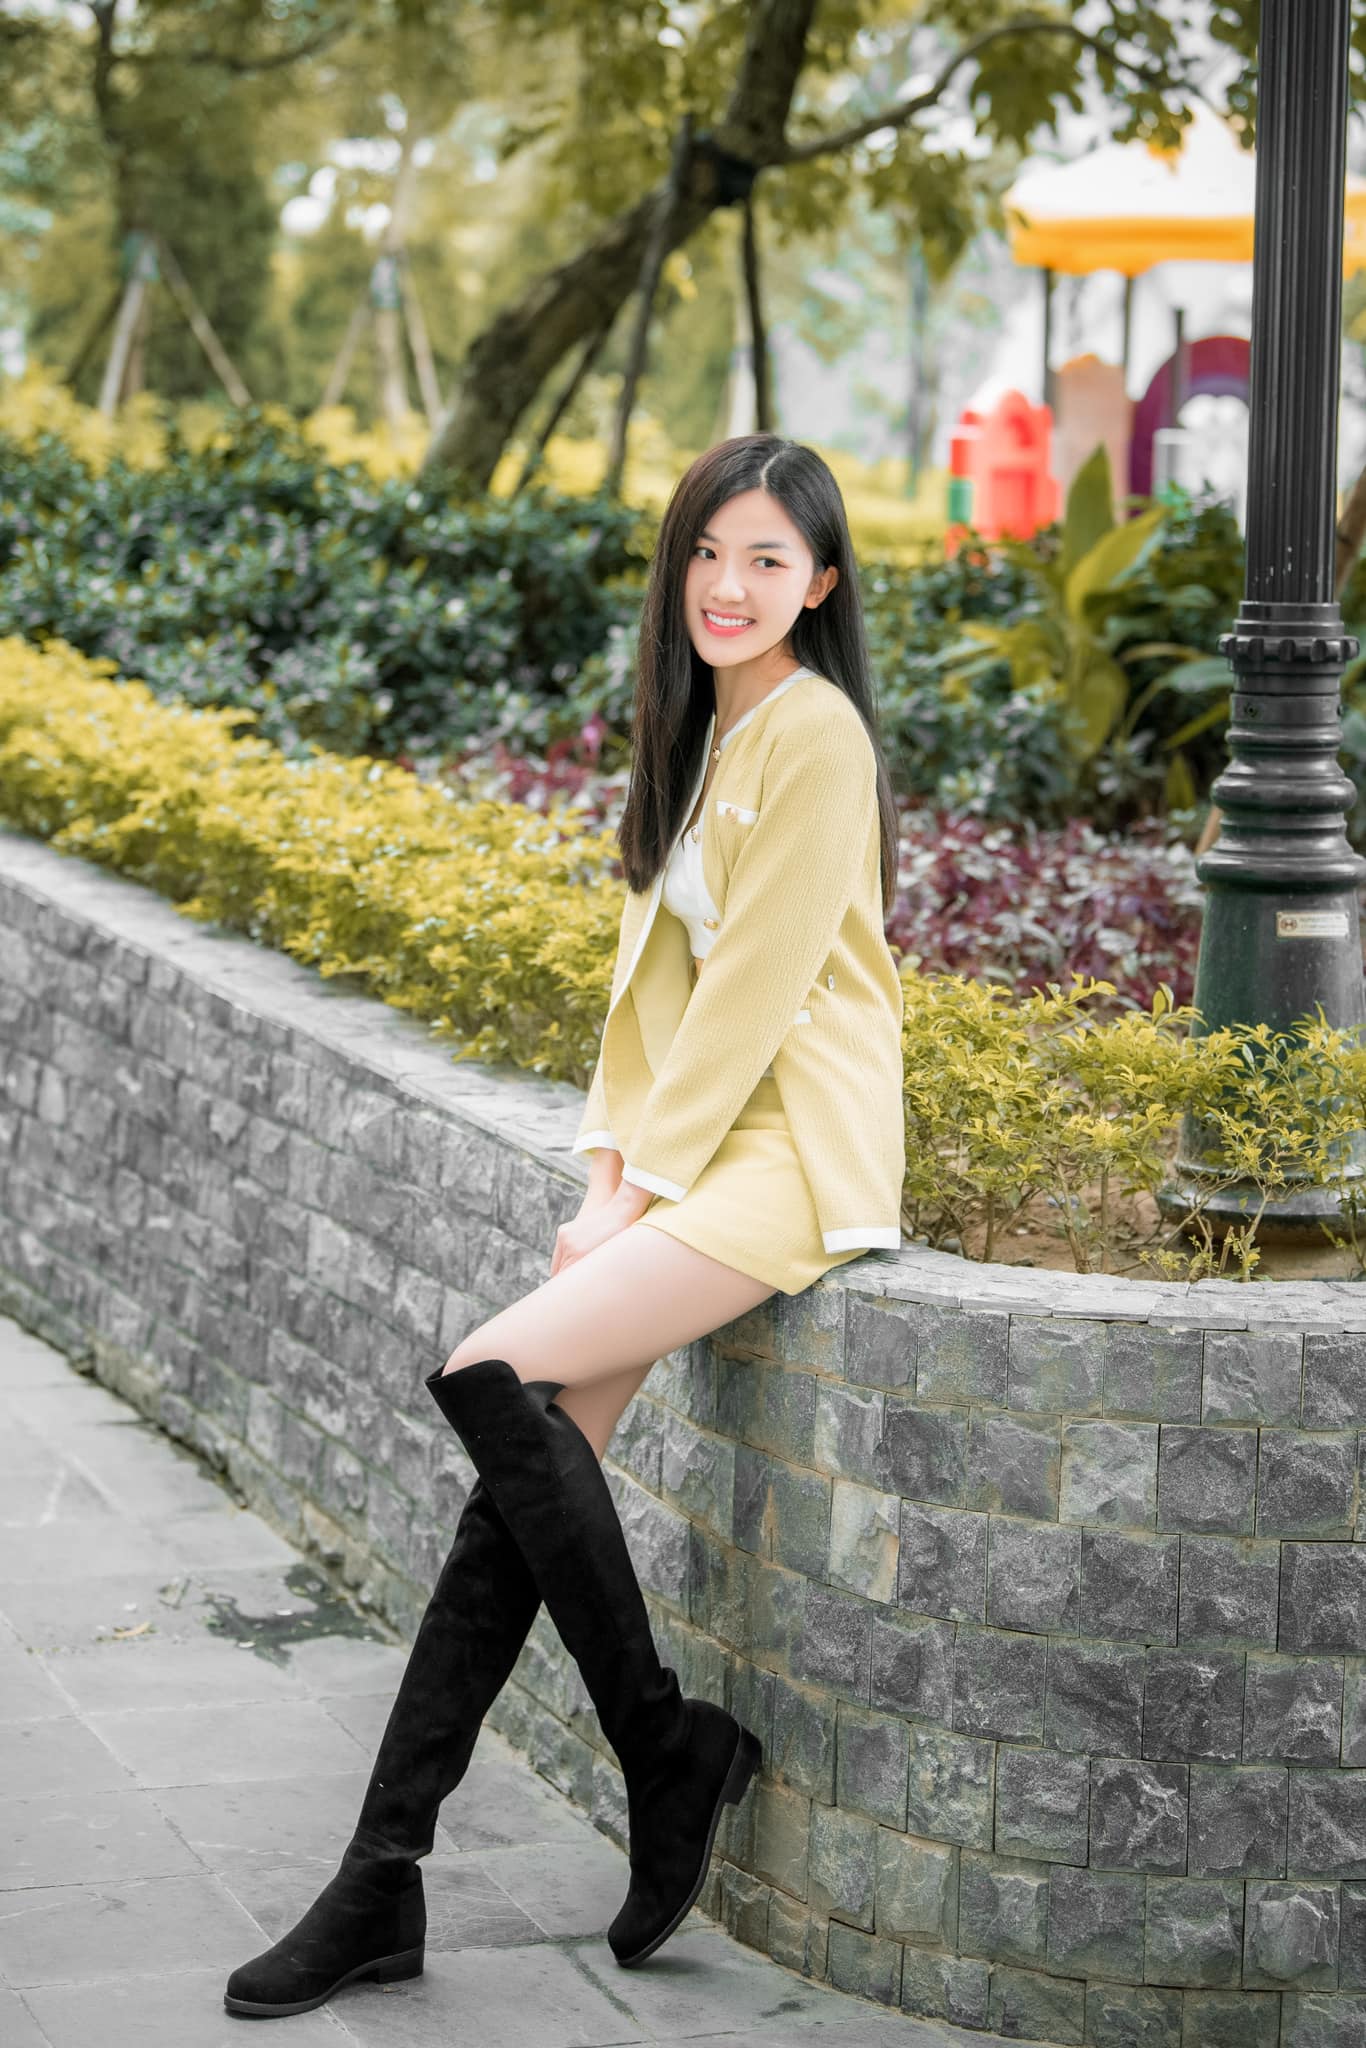 Nữ diễn viên quê Thanh Hóa mặt xinh, dáng đẹp cao hơn 1m70 chẳng thua kém hoa hậu - 7